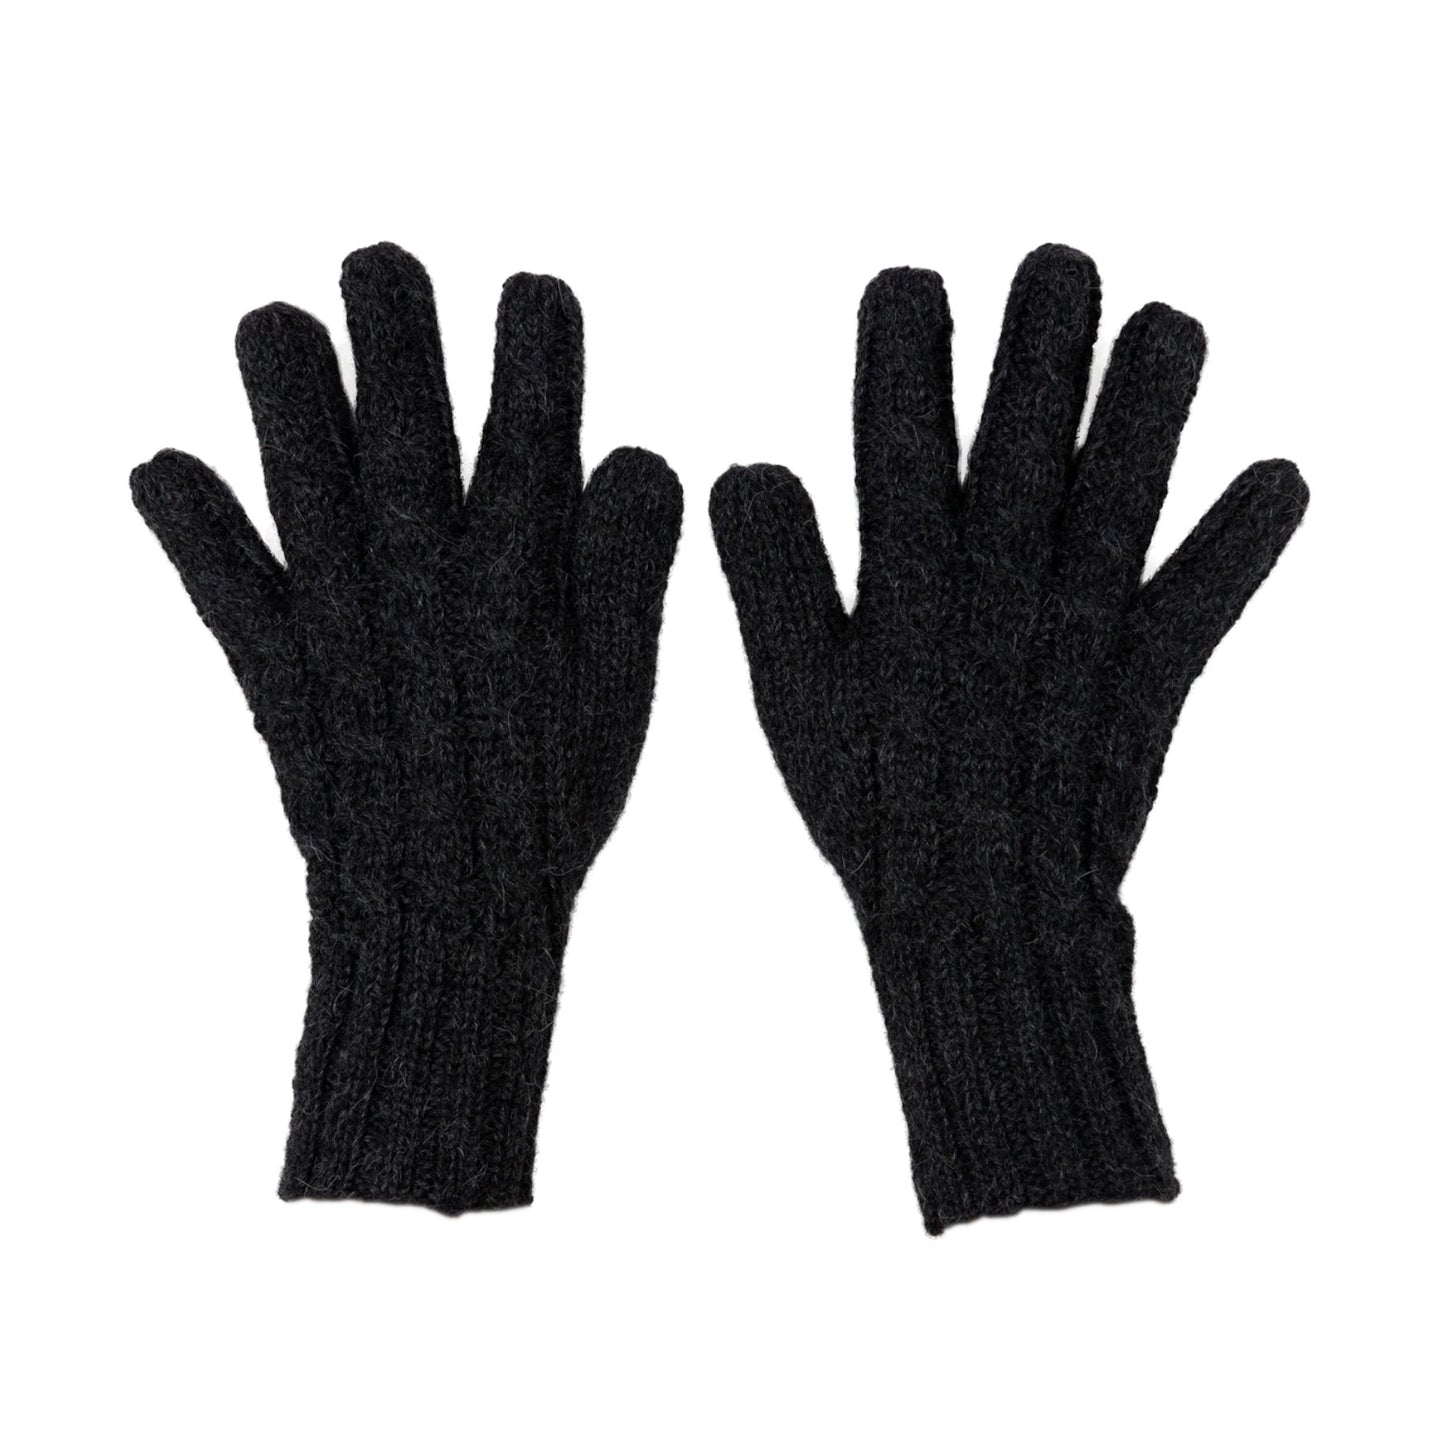 Hand Knit Alpaca Gloves